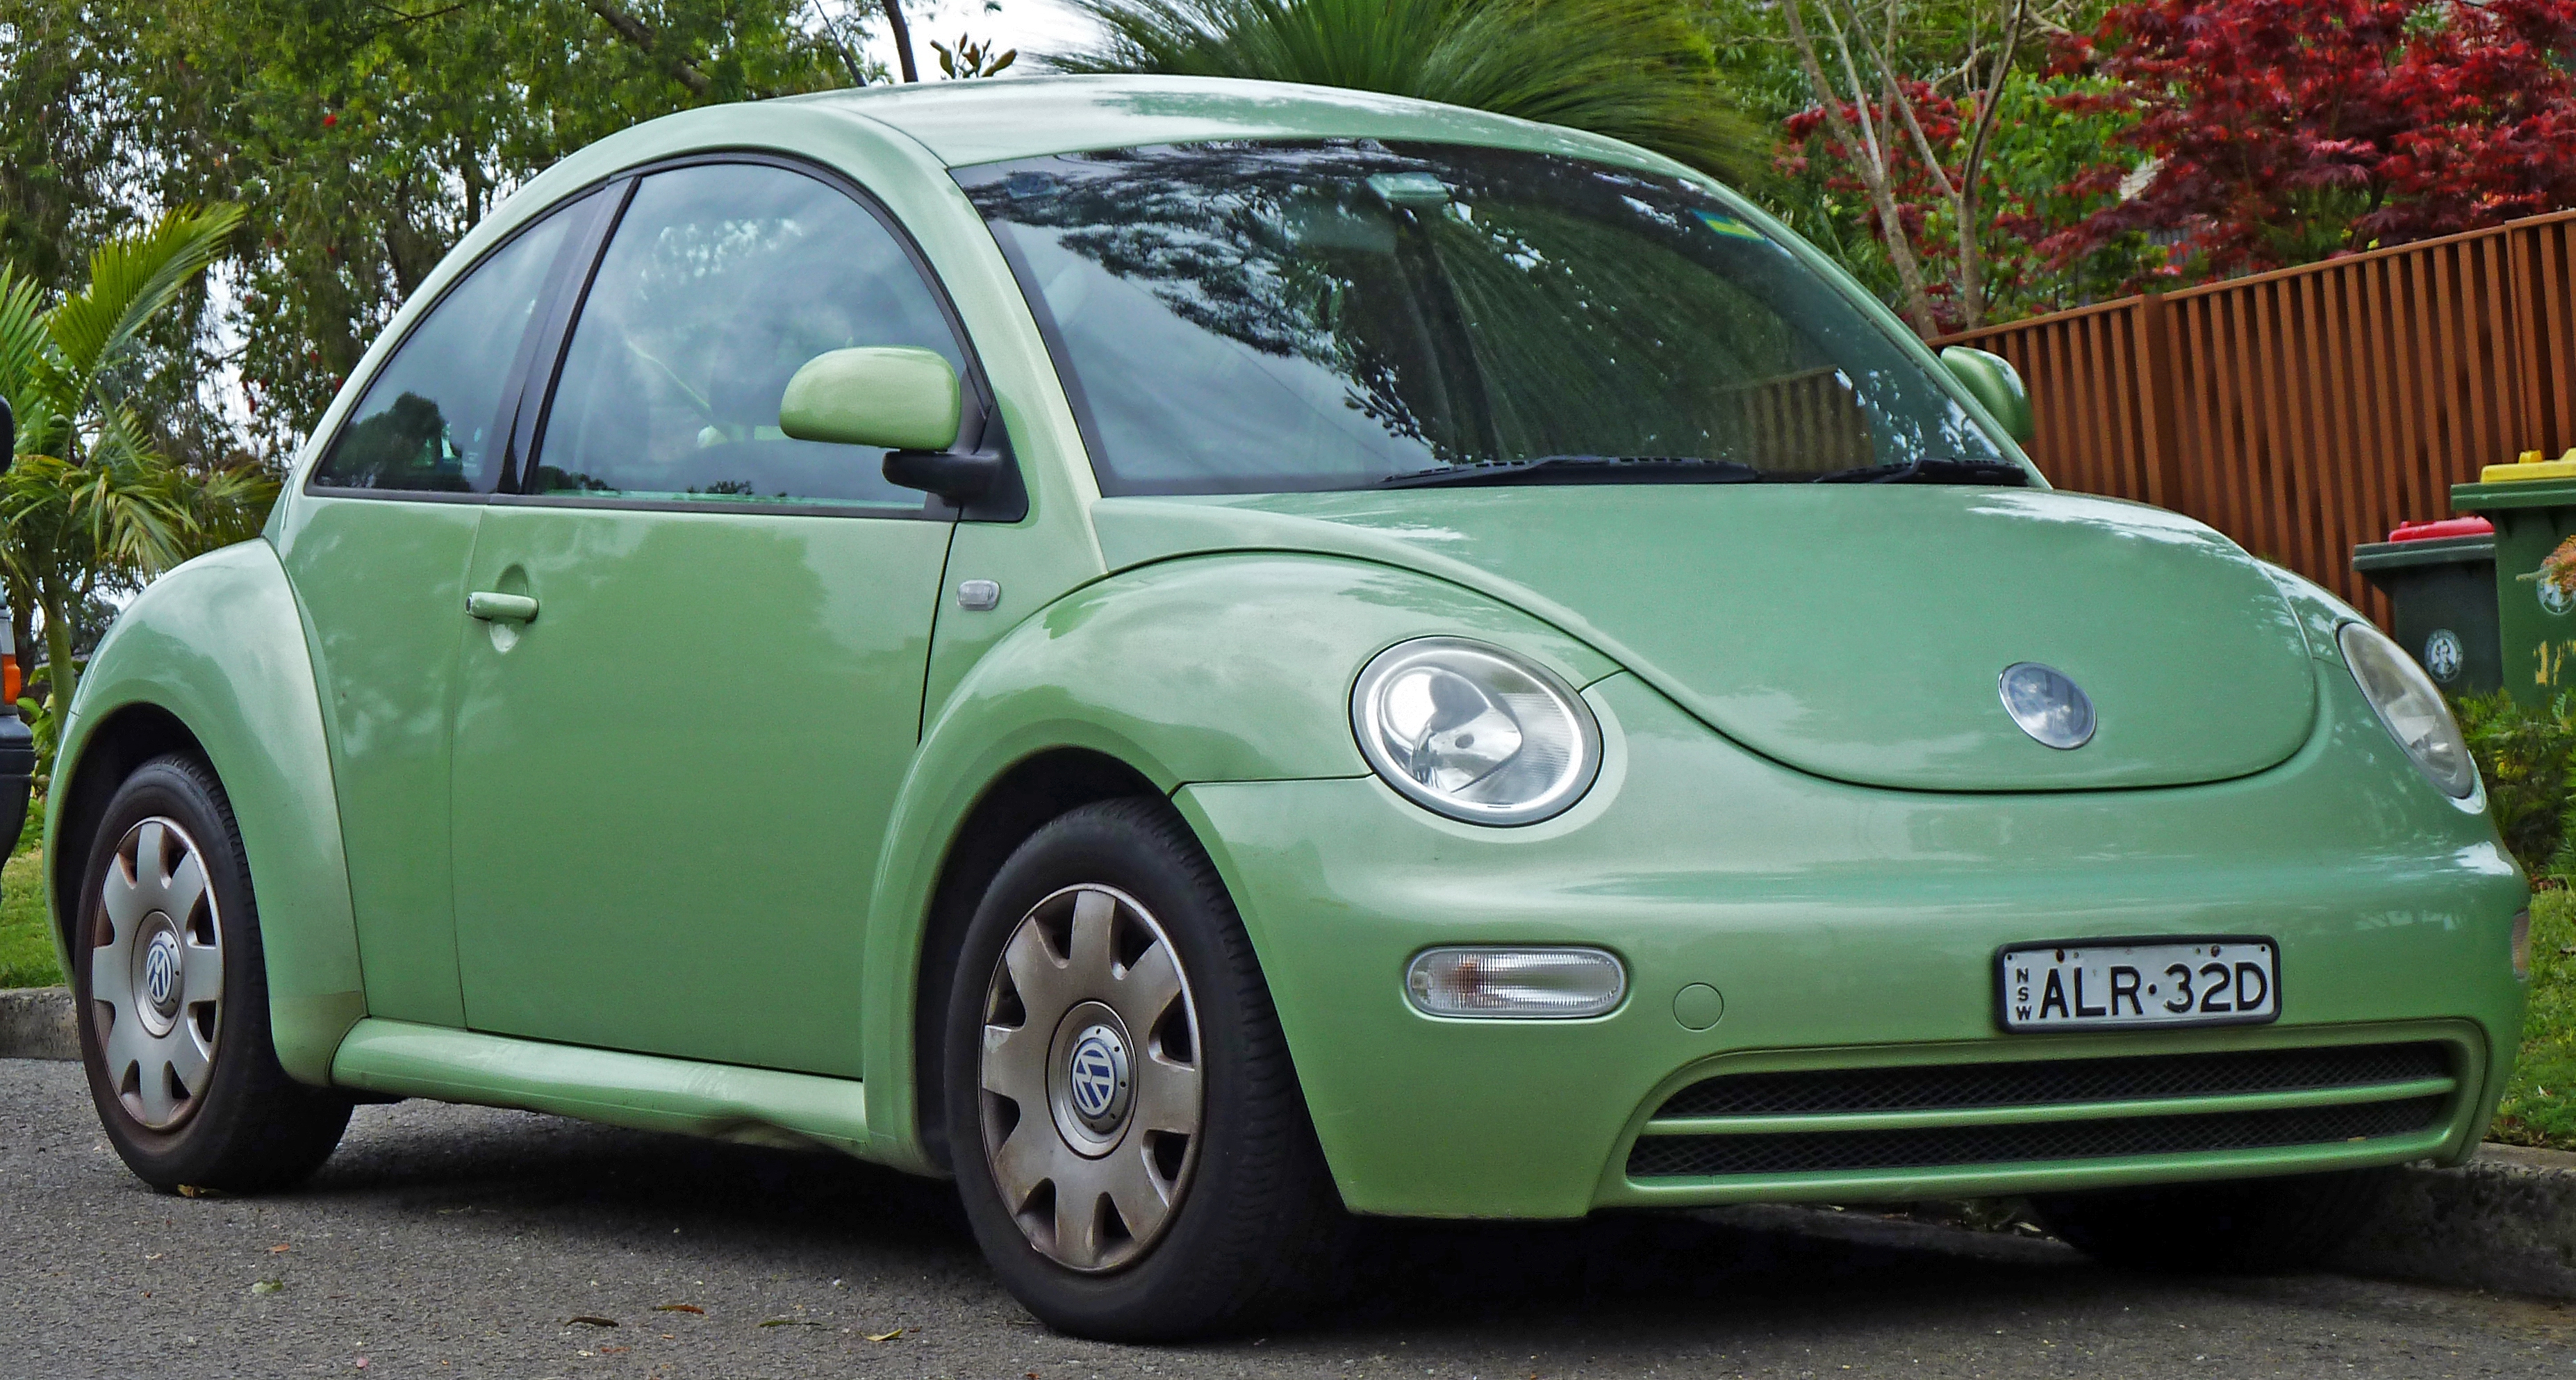 Volkswagen Beetle Wallpapers Images Photos Pictures